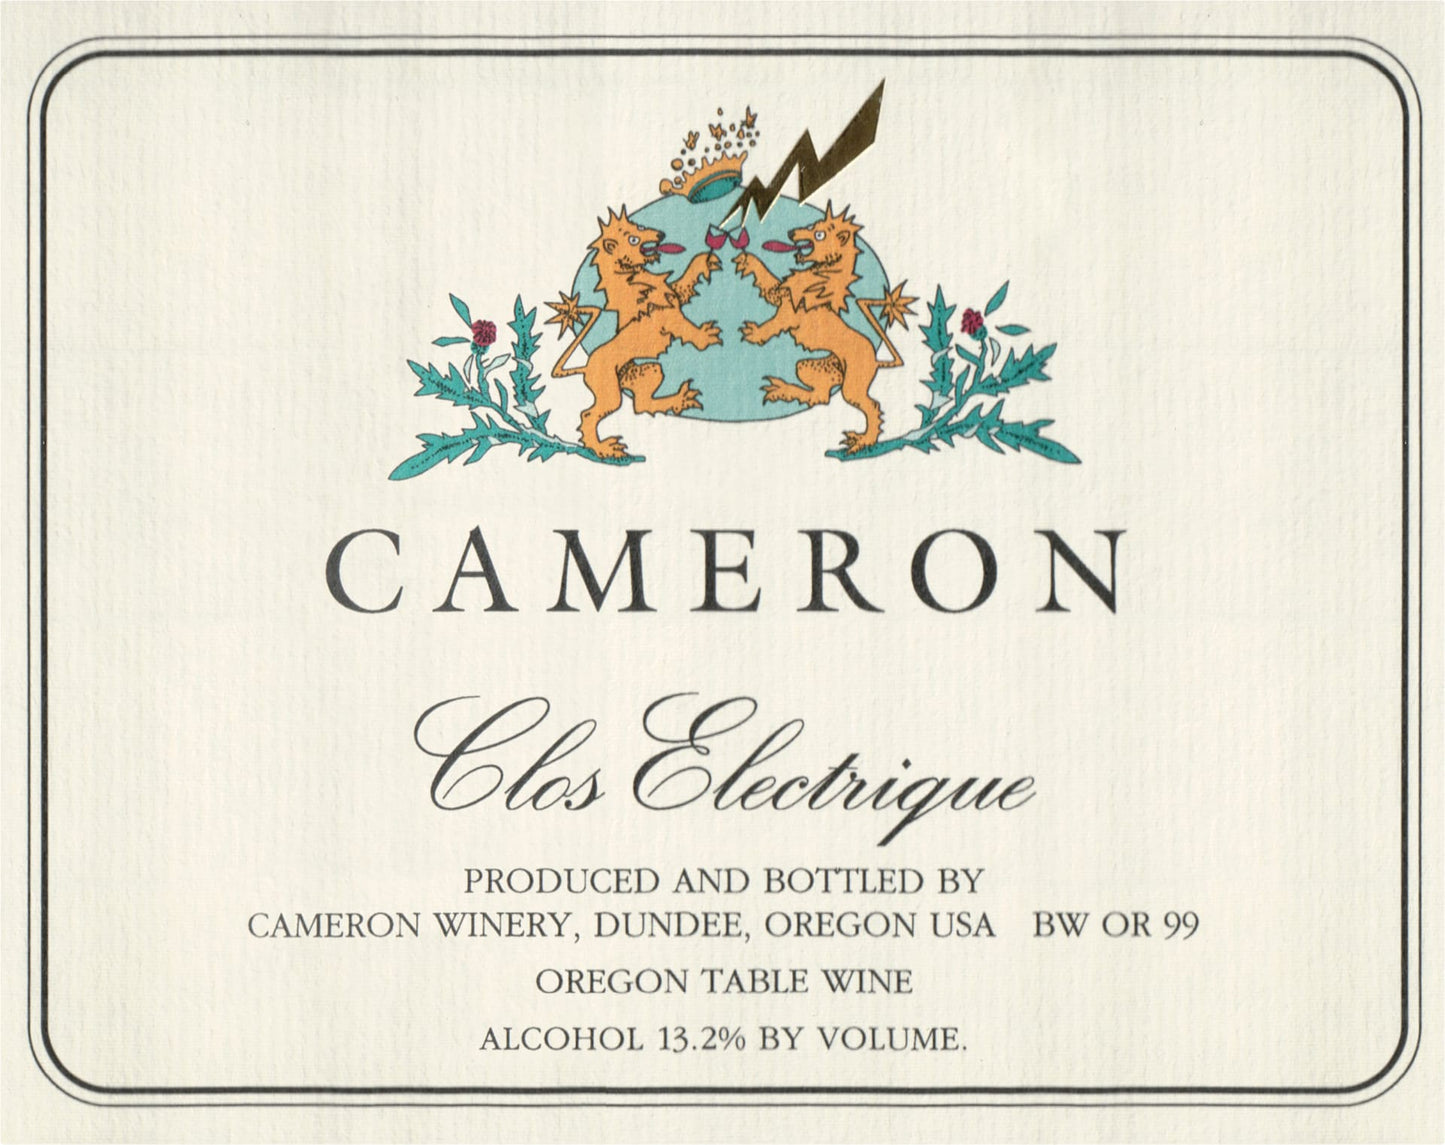 Cameron "Clos Electrique" Blanc (Chardonnay)